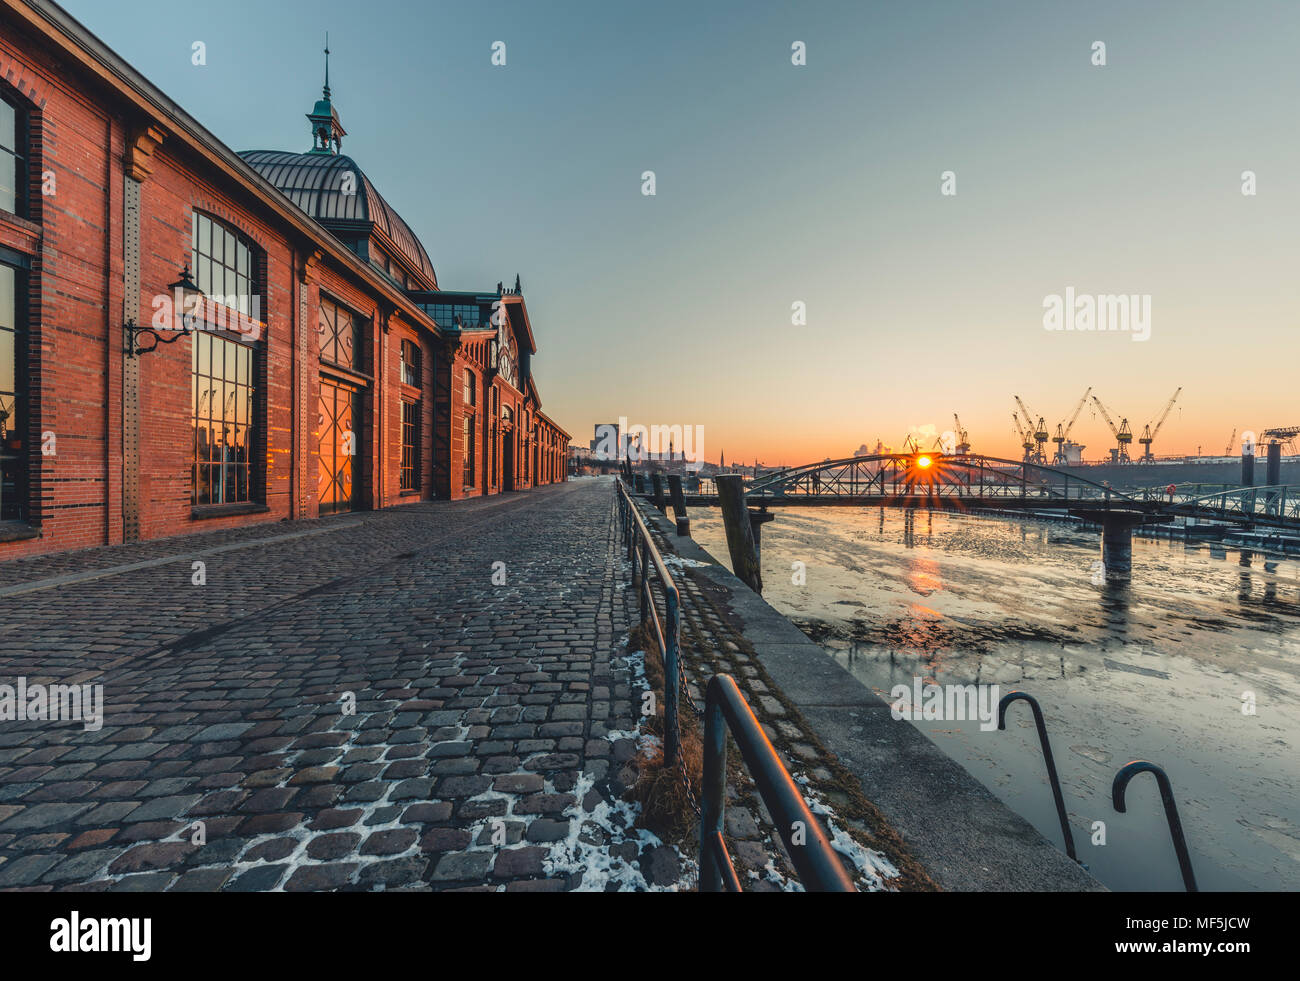 Allemagne, Hambourg, Altona, poissons halle au lever du soleil Banque D'Images